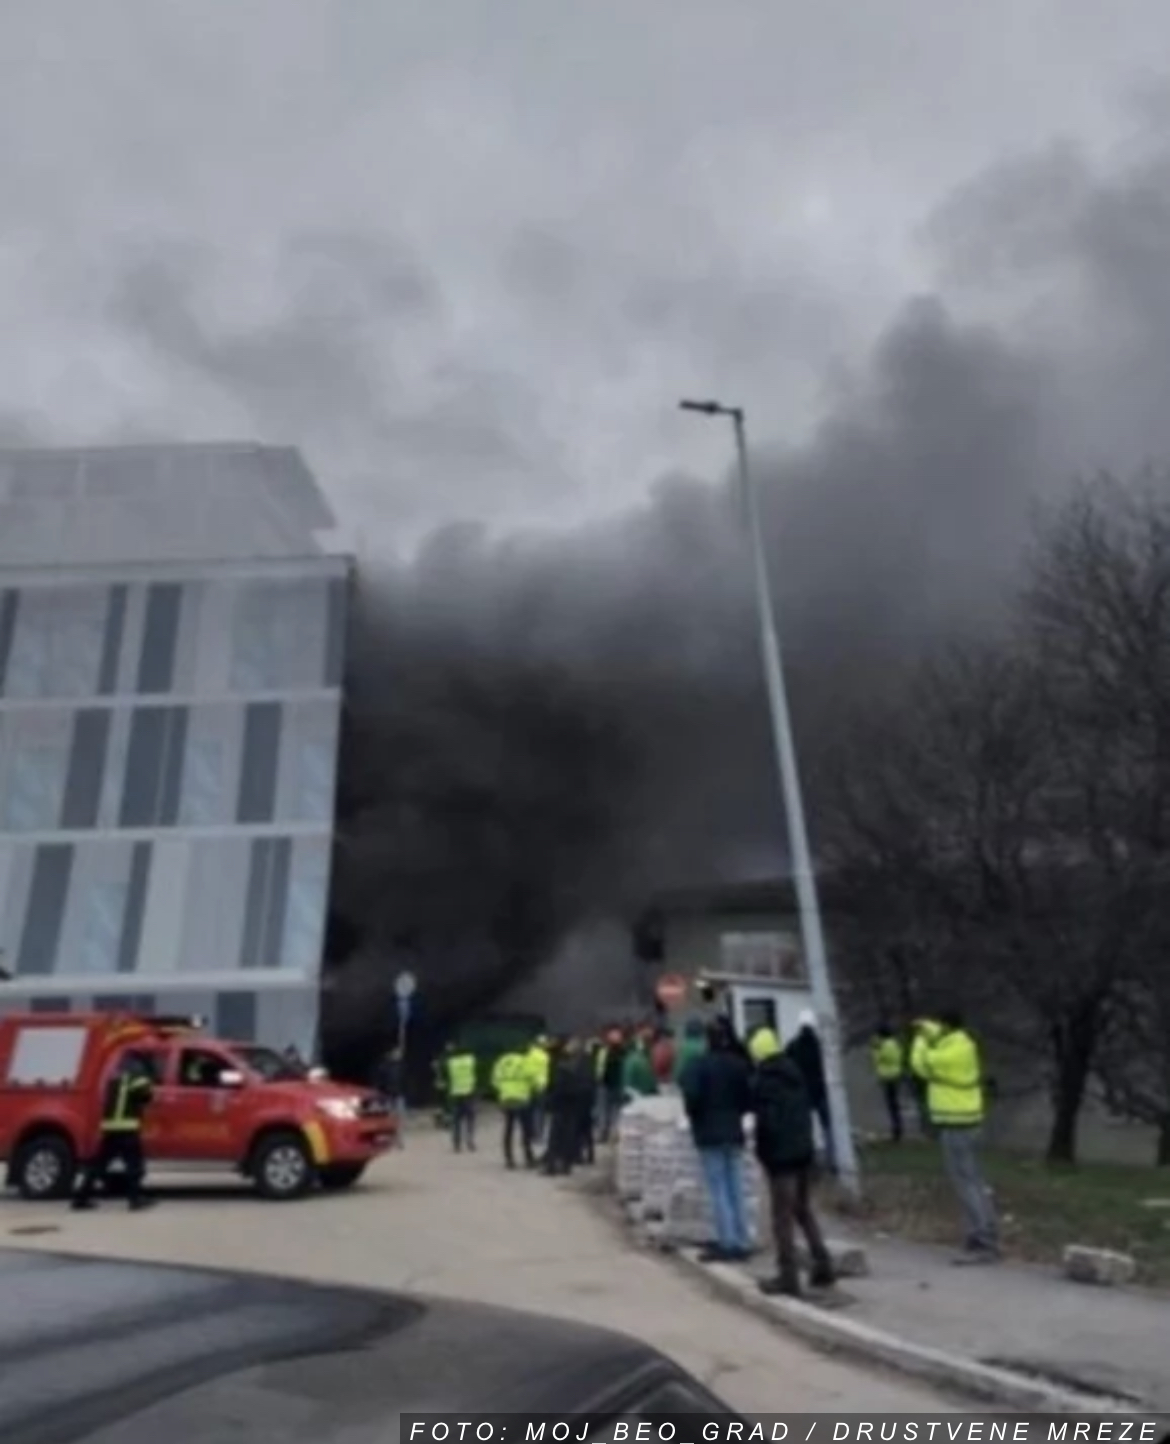 PRVI SNIMAK POŽARA U KLINIČKOM CENTRU SRBIJE Na licu mesta 26 vatrogasaca, svi radnici evakuisani (VIDEO)